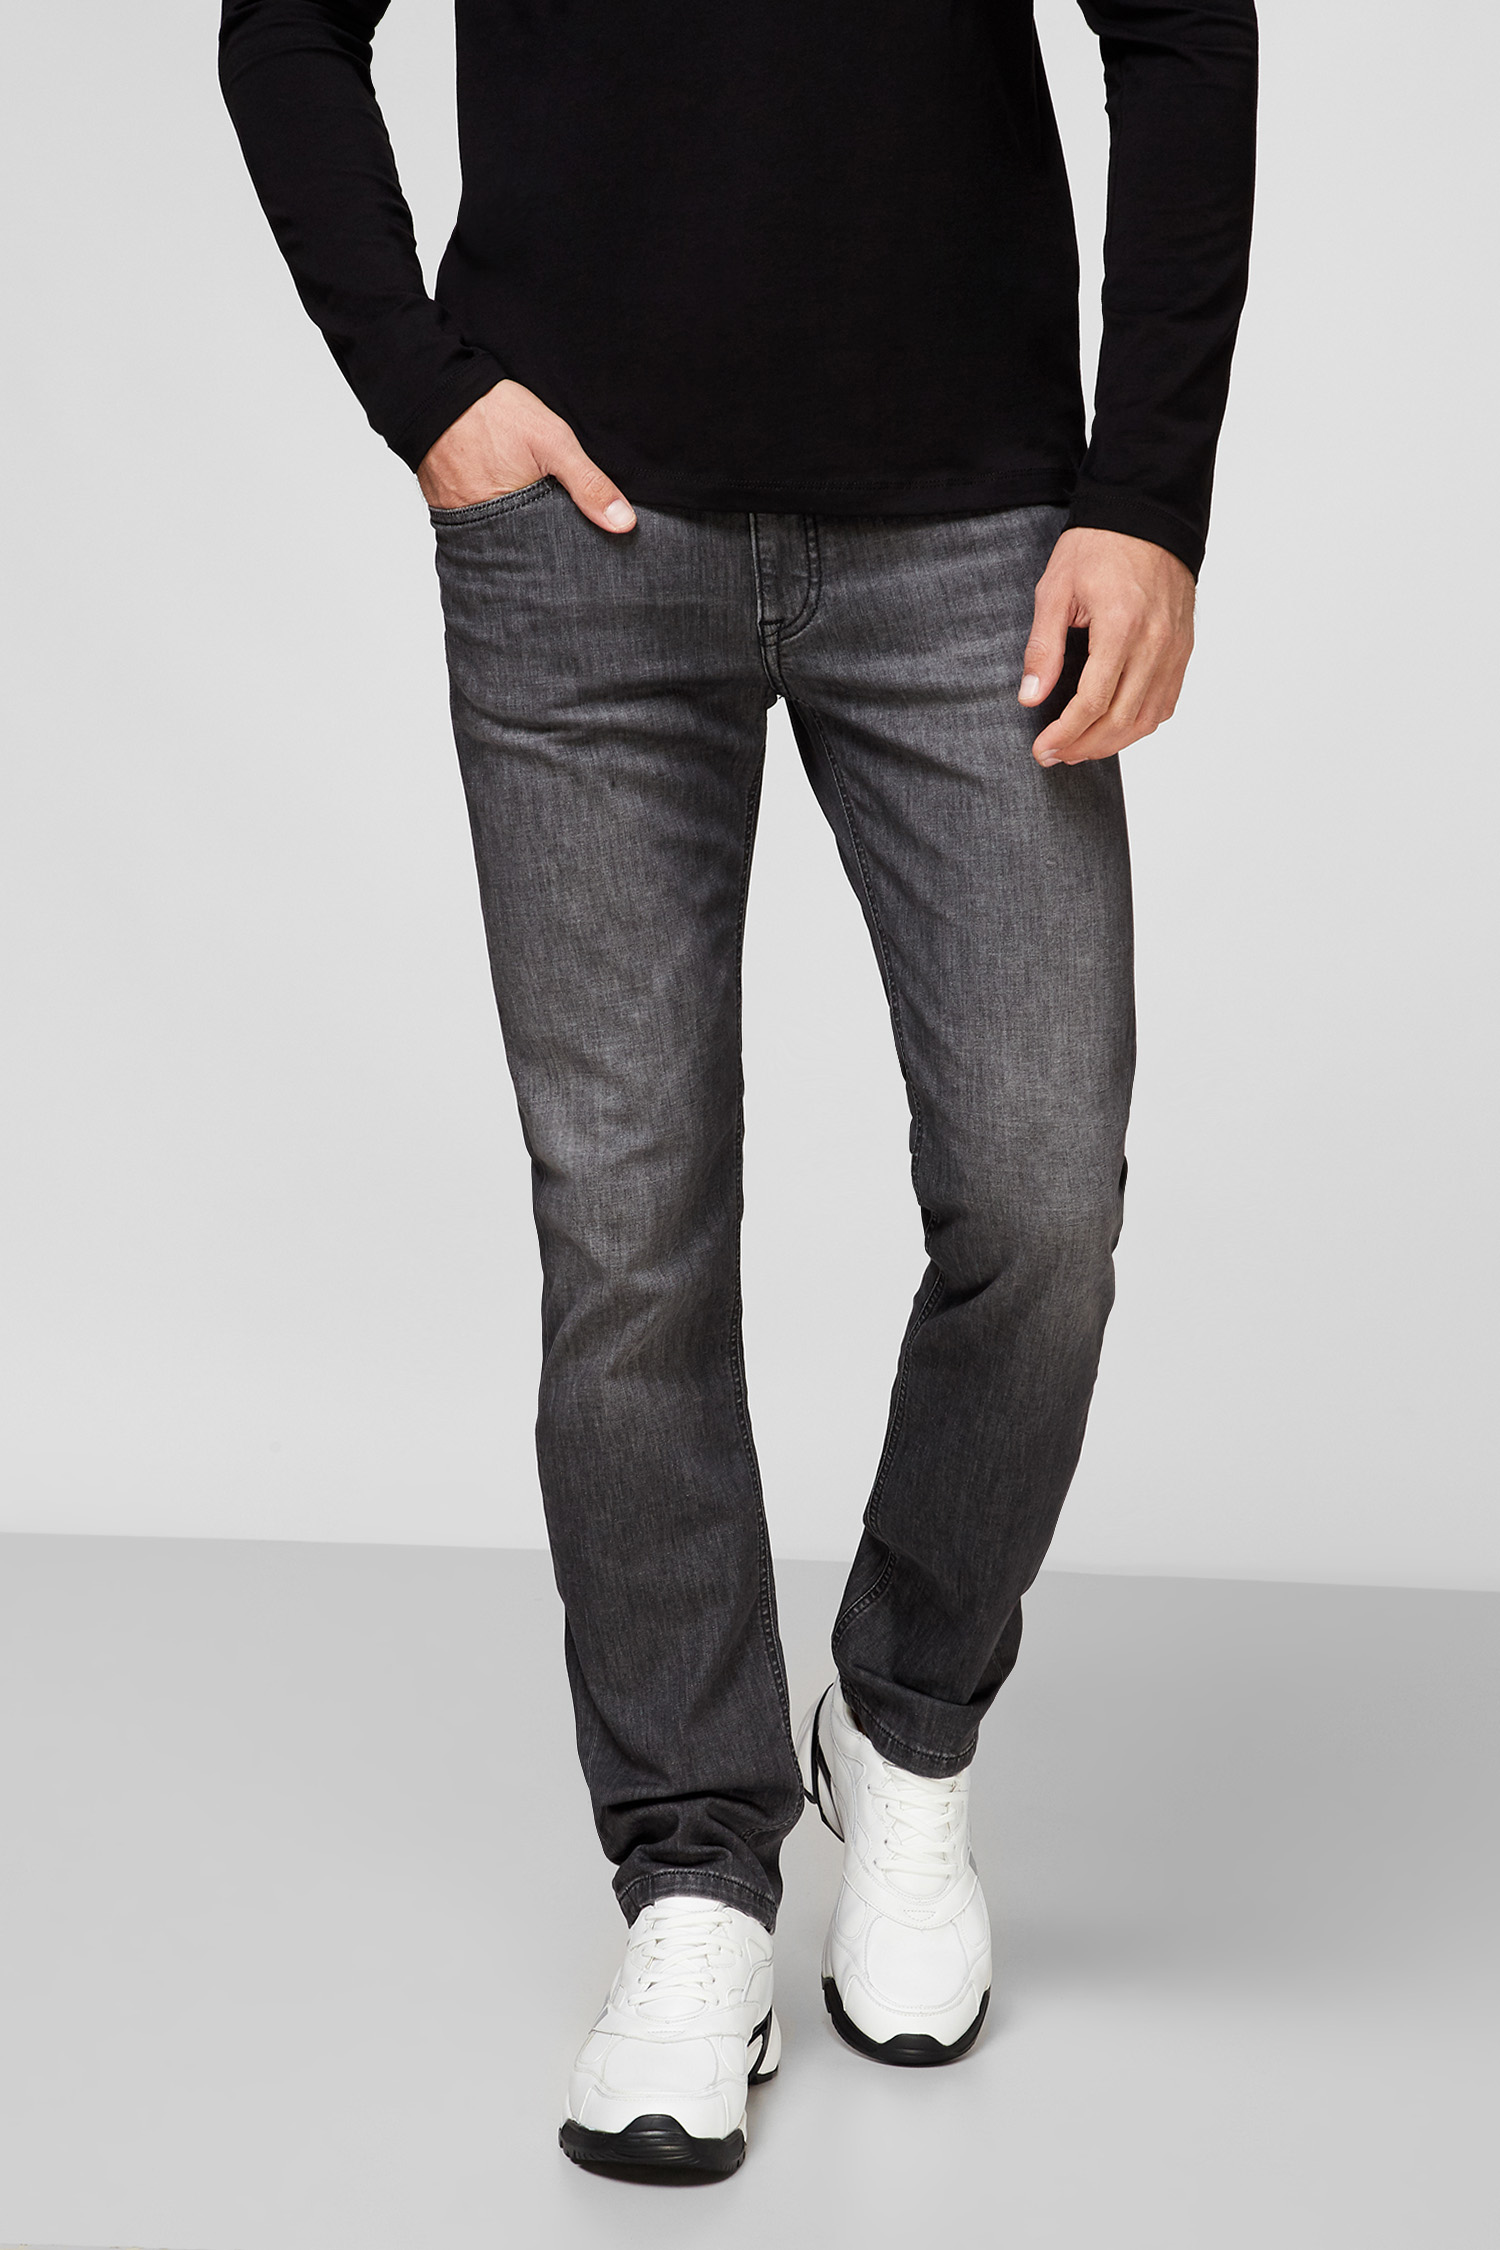 Чоловічі сірі джинси Karl Lagerfeld 501833.265840;990